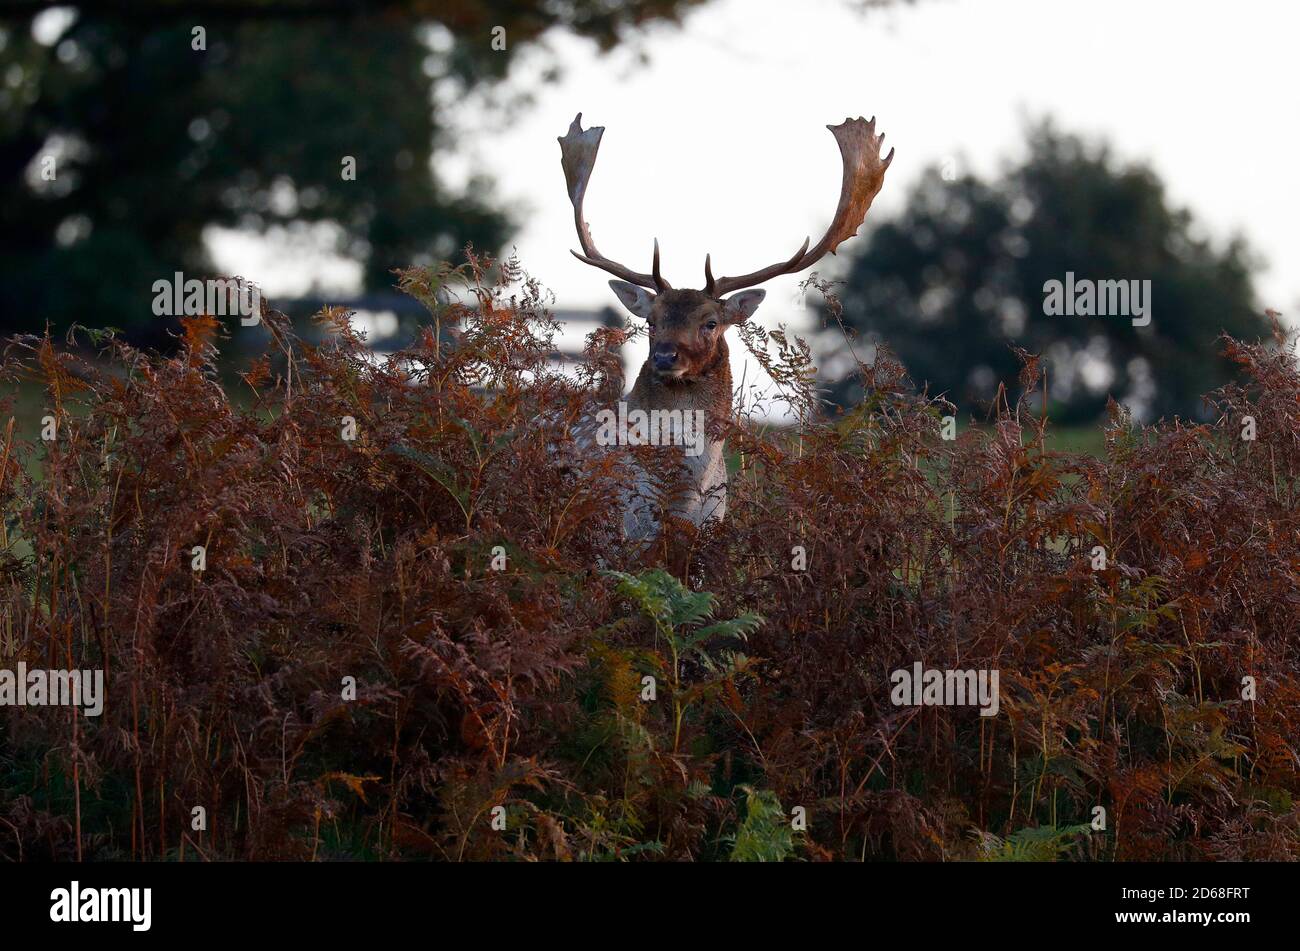 Newtown Linford, Leicestershire, Regno Unito. 15 ottobre 2020. Durante la stagione di caccia nel Bradgate Park, uno stag di daini si trova in bracken. Credit Darren Staples/Alamy Live News. Foto Stock